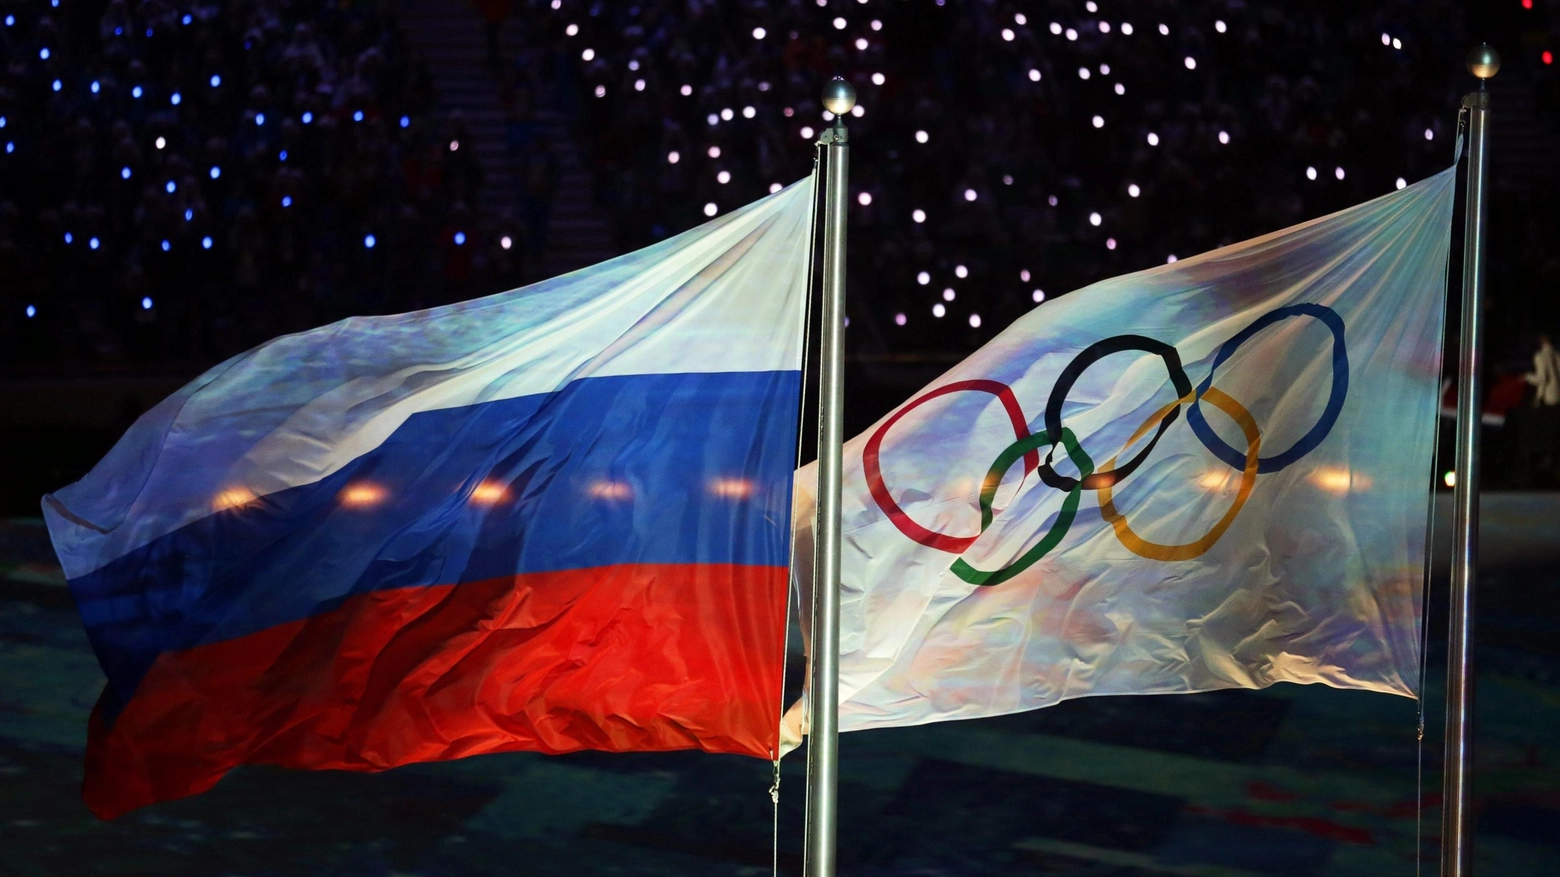 Le bandiere russa e olimpica a Sochi (Ansa)